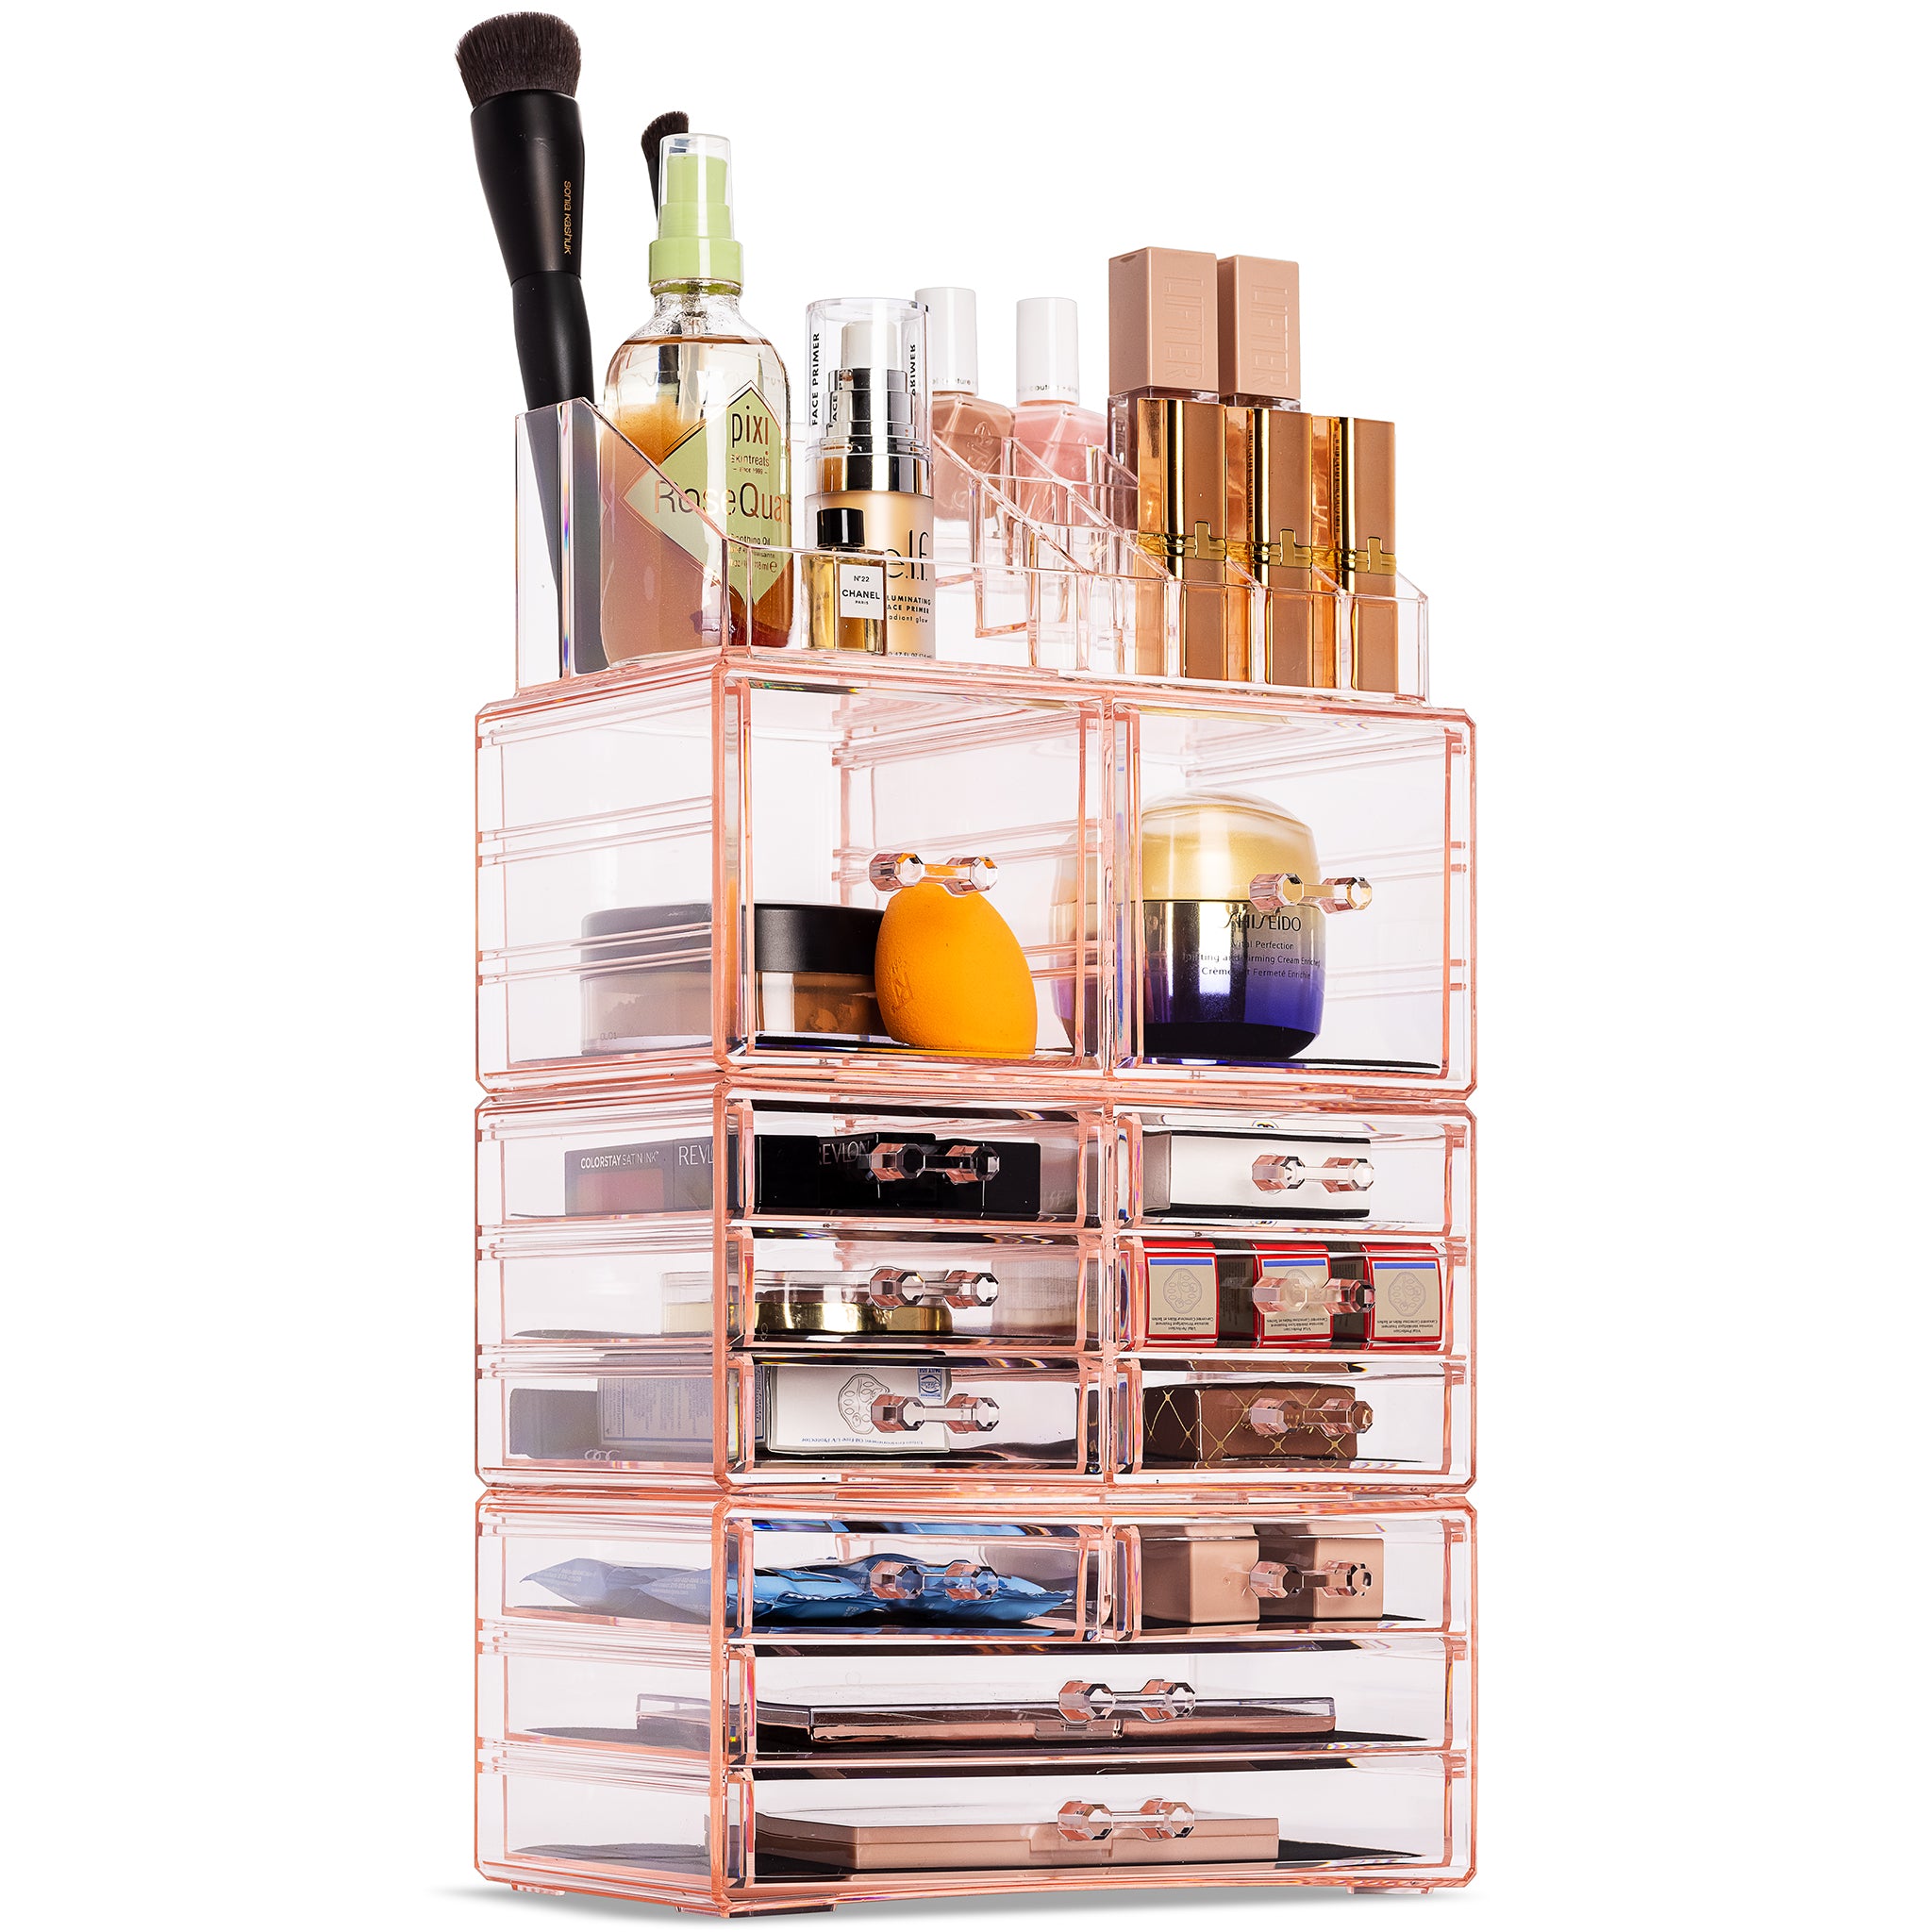 Betaling musiker Om indstilling X-Large Clear Makeup Organizer Case - 4 Piece Set (12 drawers) – Sorbus Home